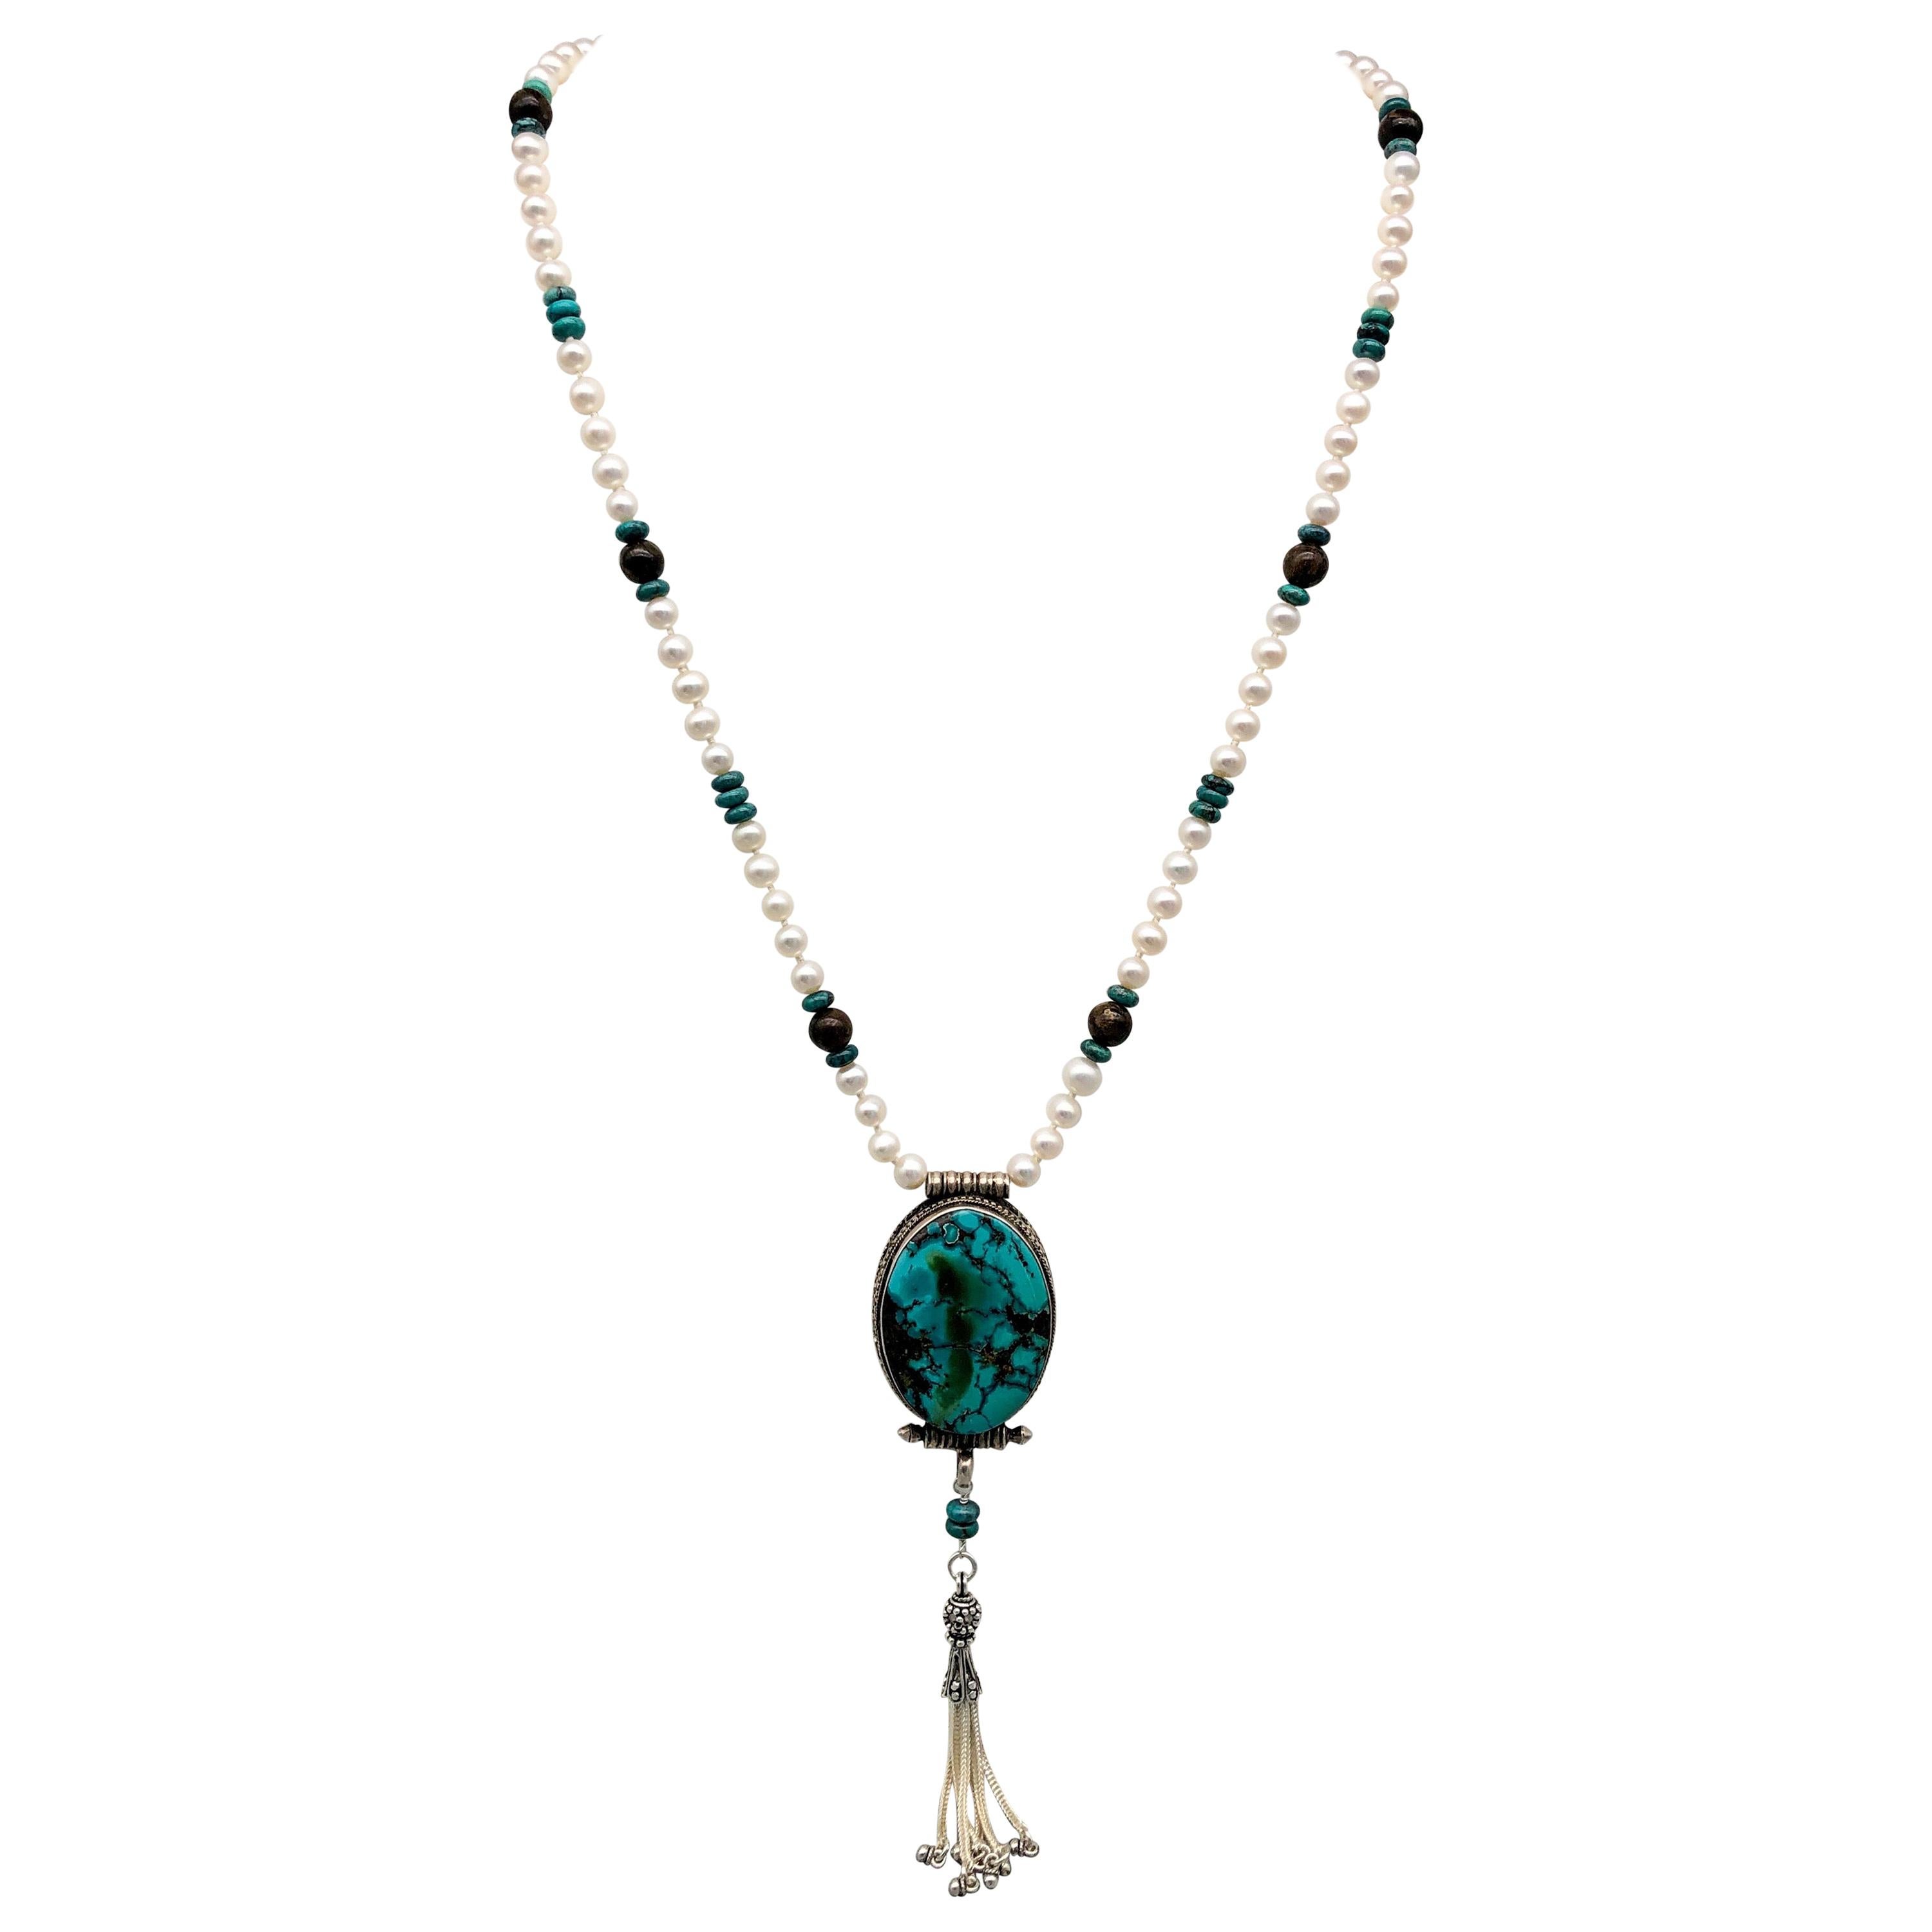 
Voici l'époustouflant collier à pendentif tibétain en turquoise et argent, unique en son genre - une véritable œuvre d'art qui respire l'élégance et la sophistication. Ce long collier présente une superbe turquoise sertie dans un pendentif tibétain